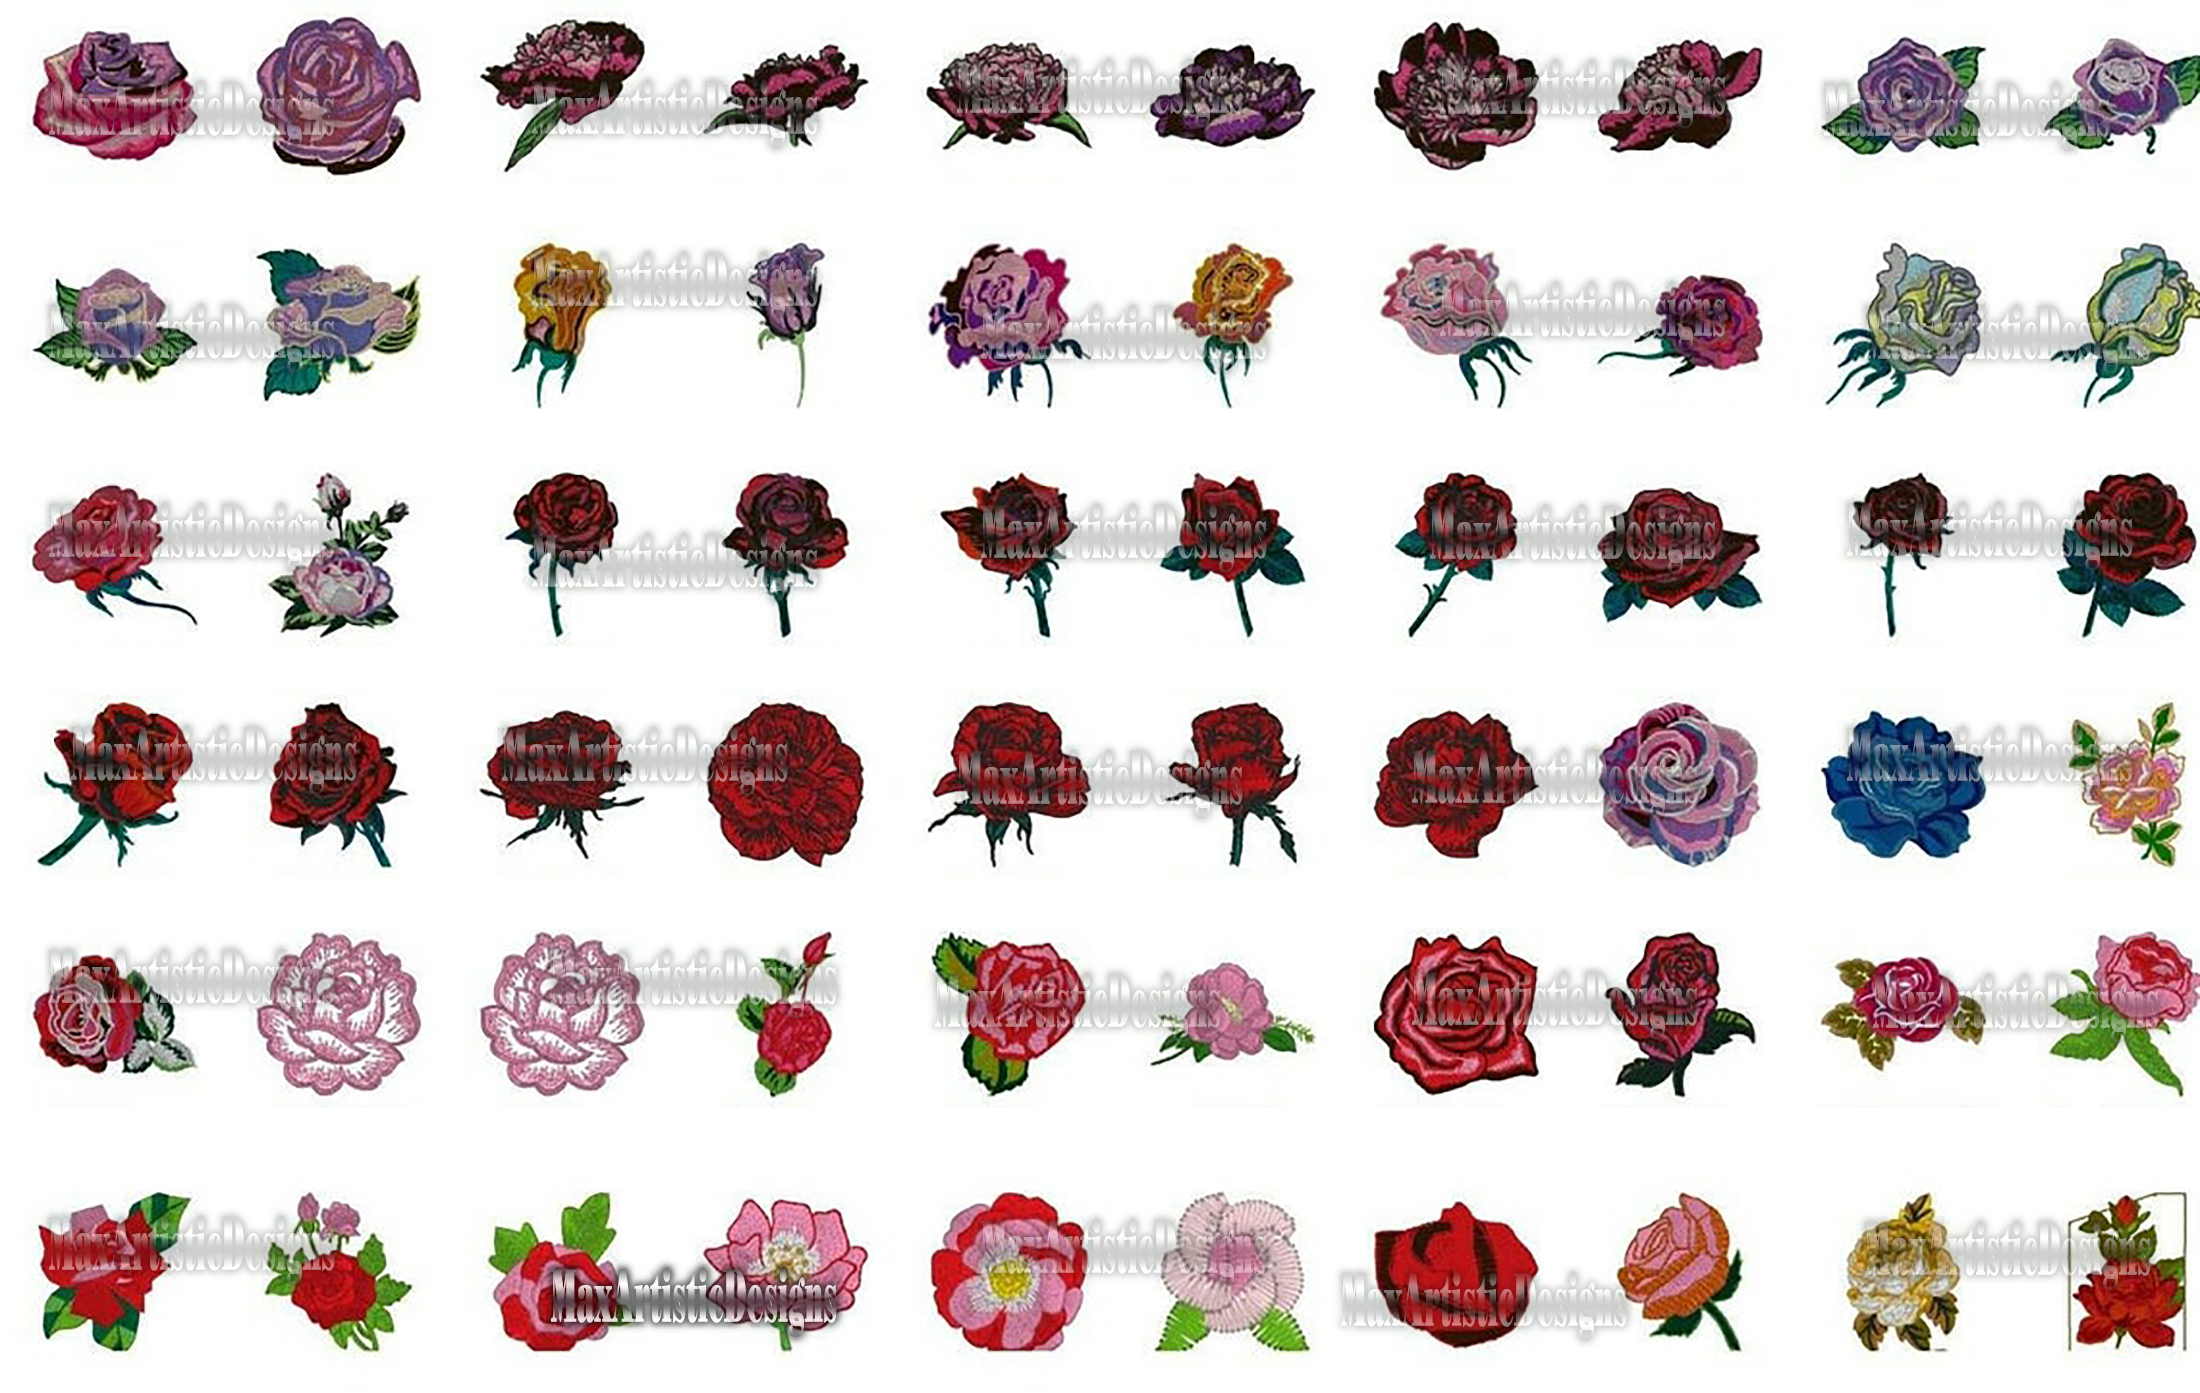 Raccolta di oltre 1800 file di macchine da ricamo di rose in formato pes